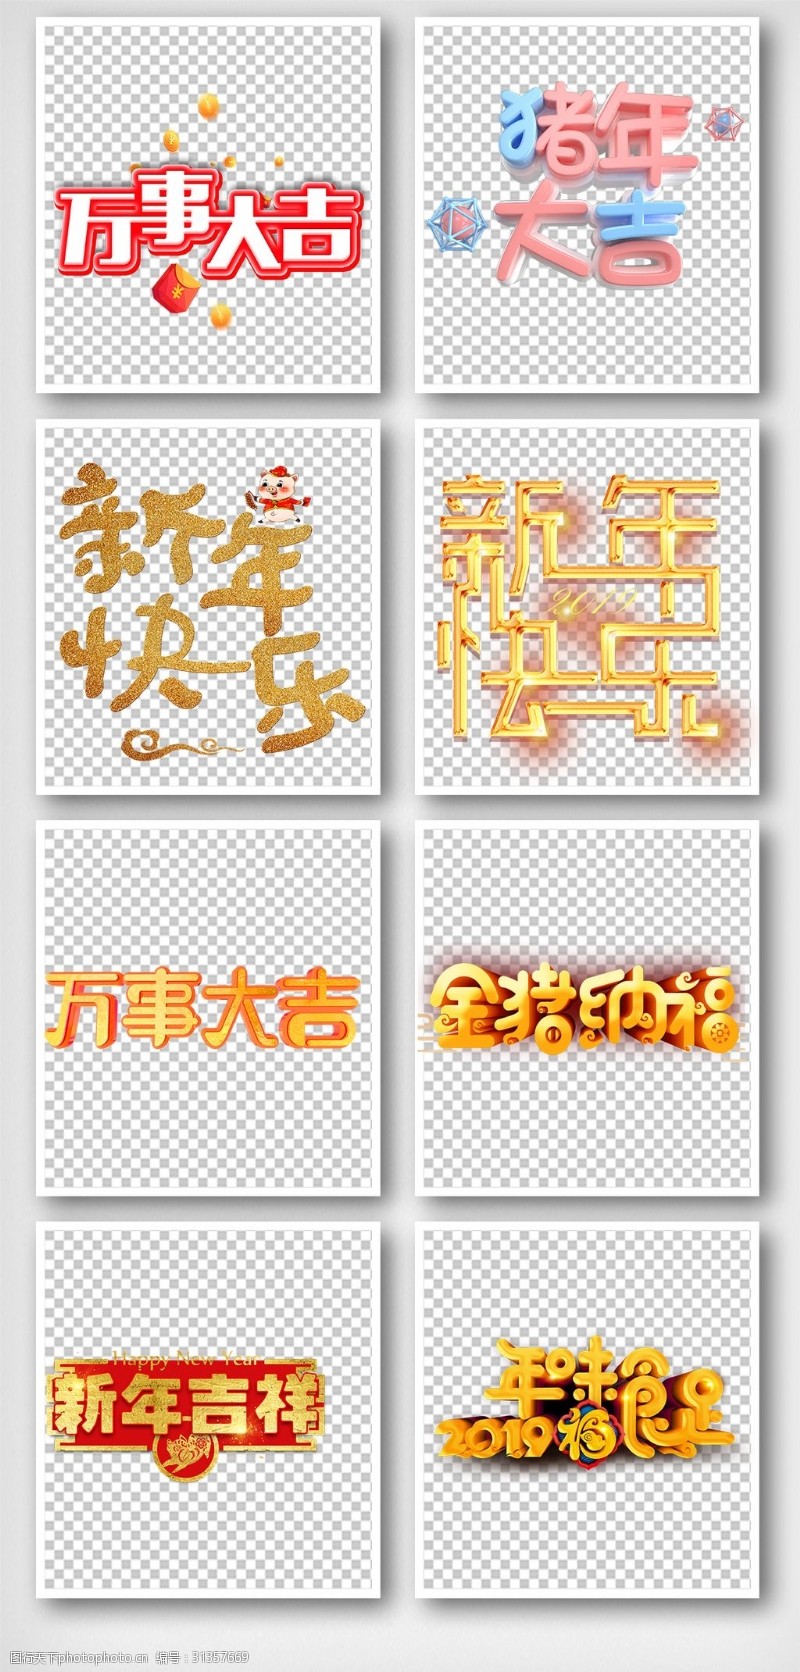 艺术福字免费下载创意立体2019新年春节猪年手抄报艺术字体元素